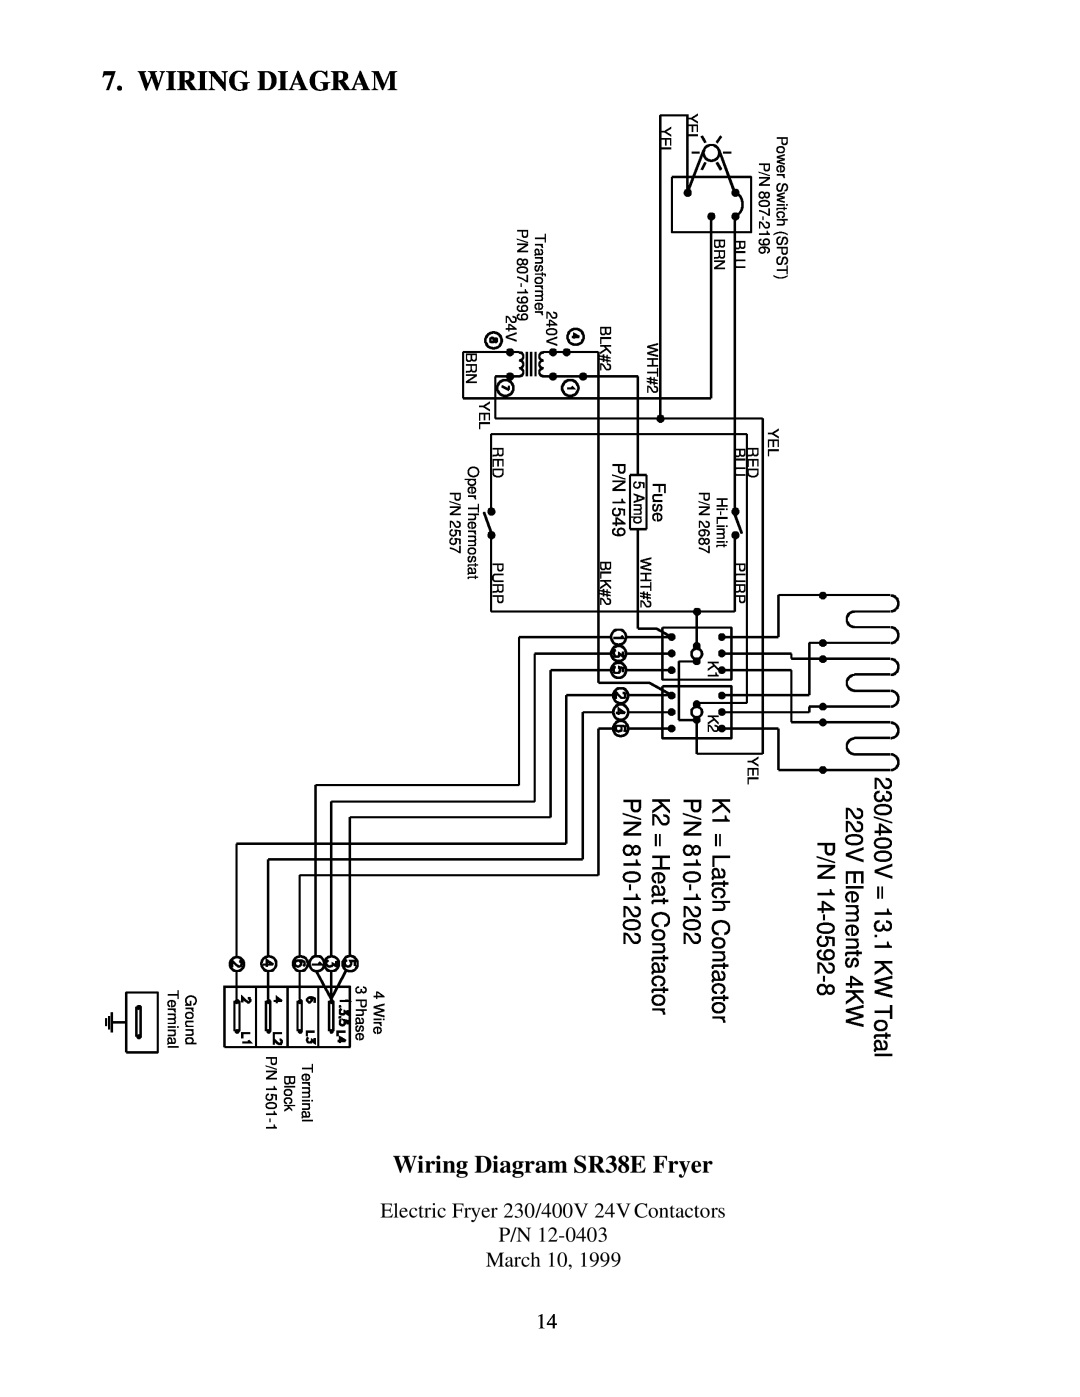 Frymaster Electric Fryer operation manual Wiring Diagram, 230/400V = 13.1 K, 220V Elements 4K, W Total, Fuse 